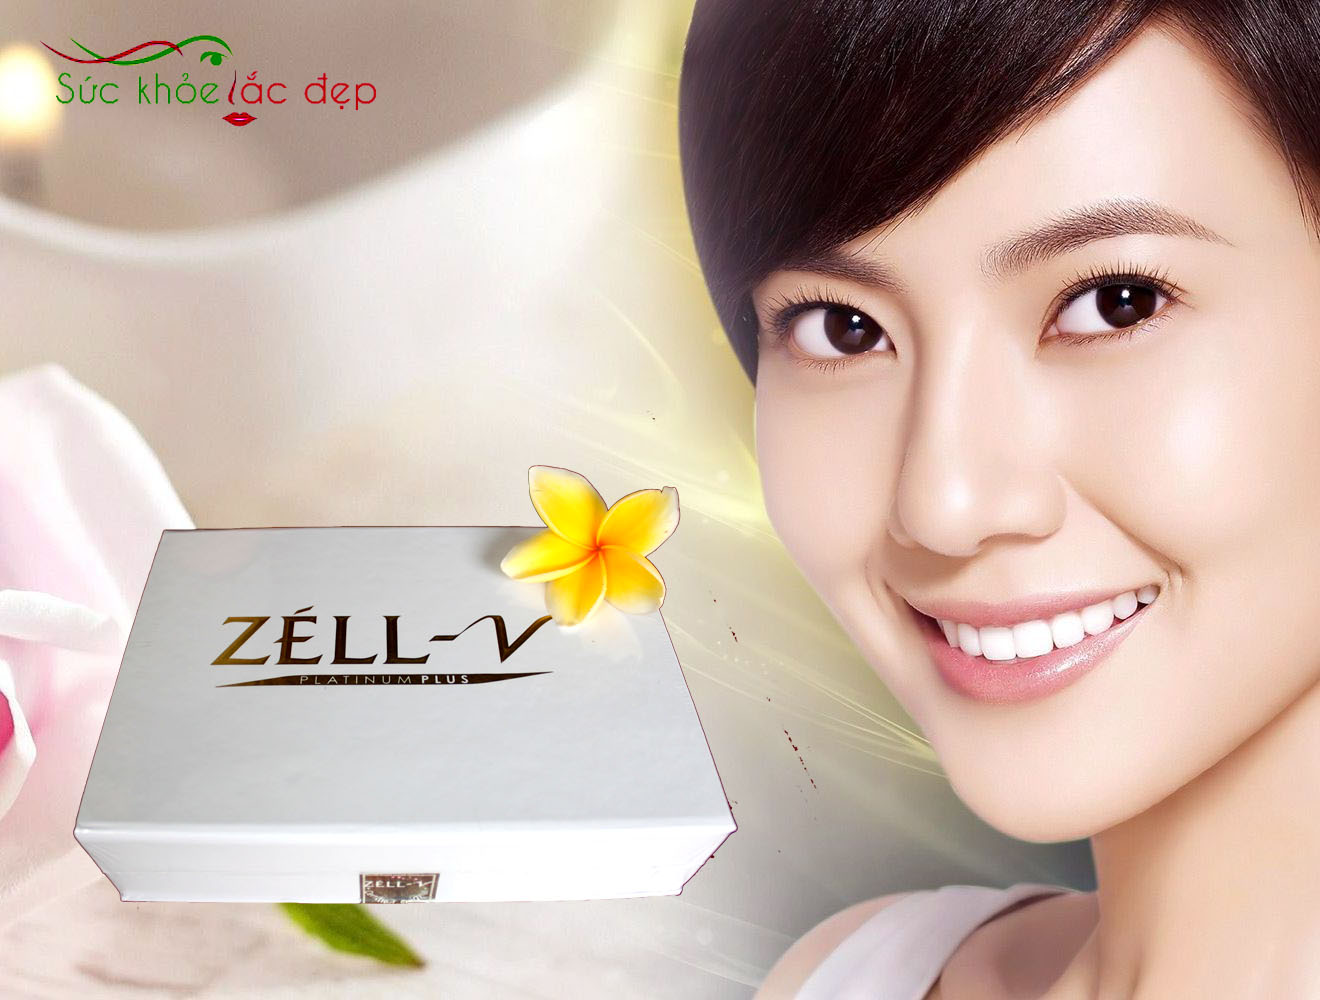 Zell V Platinum là một sản phẩm với bao điều tinh tế như vẻ đẹp người phụ nữ